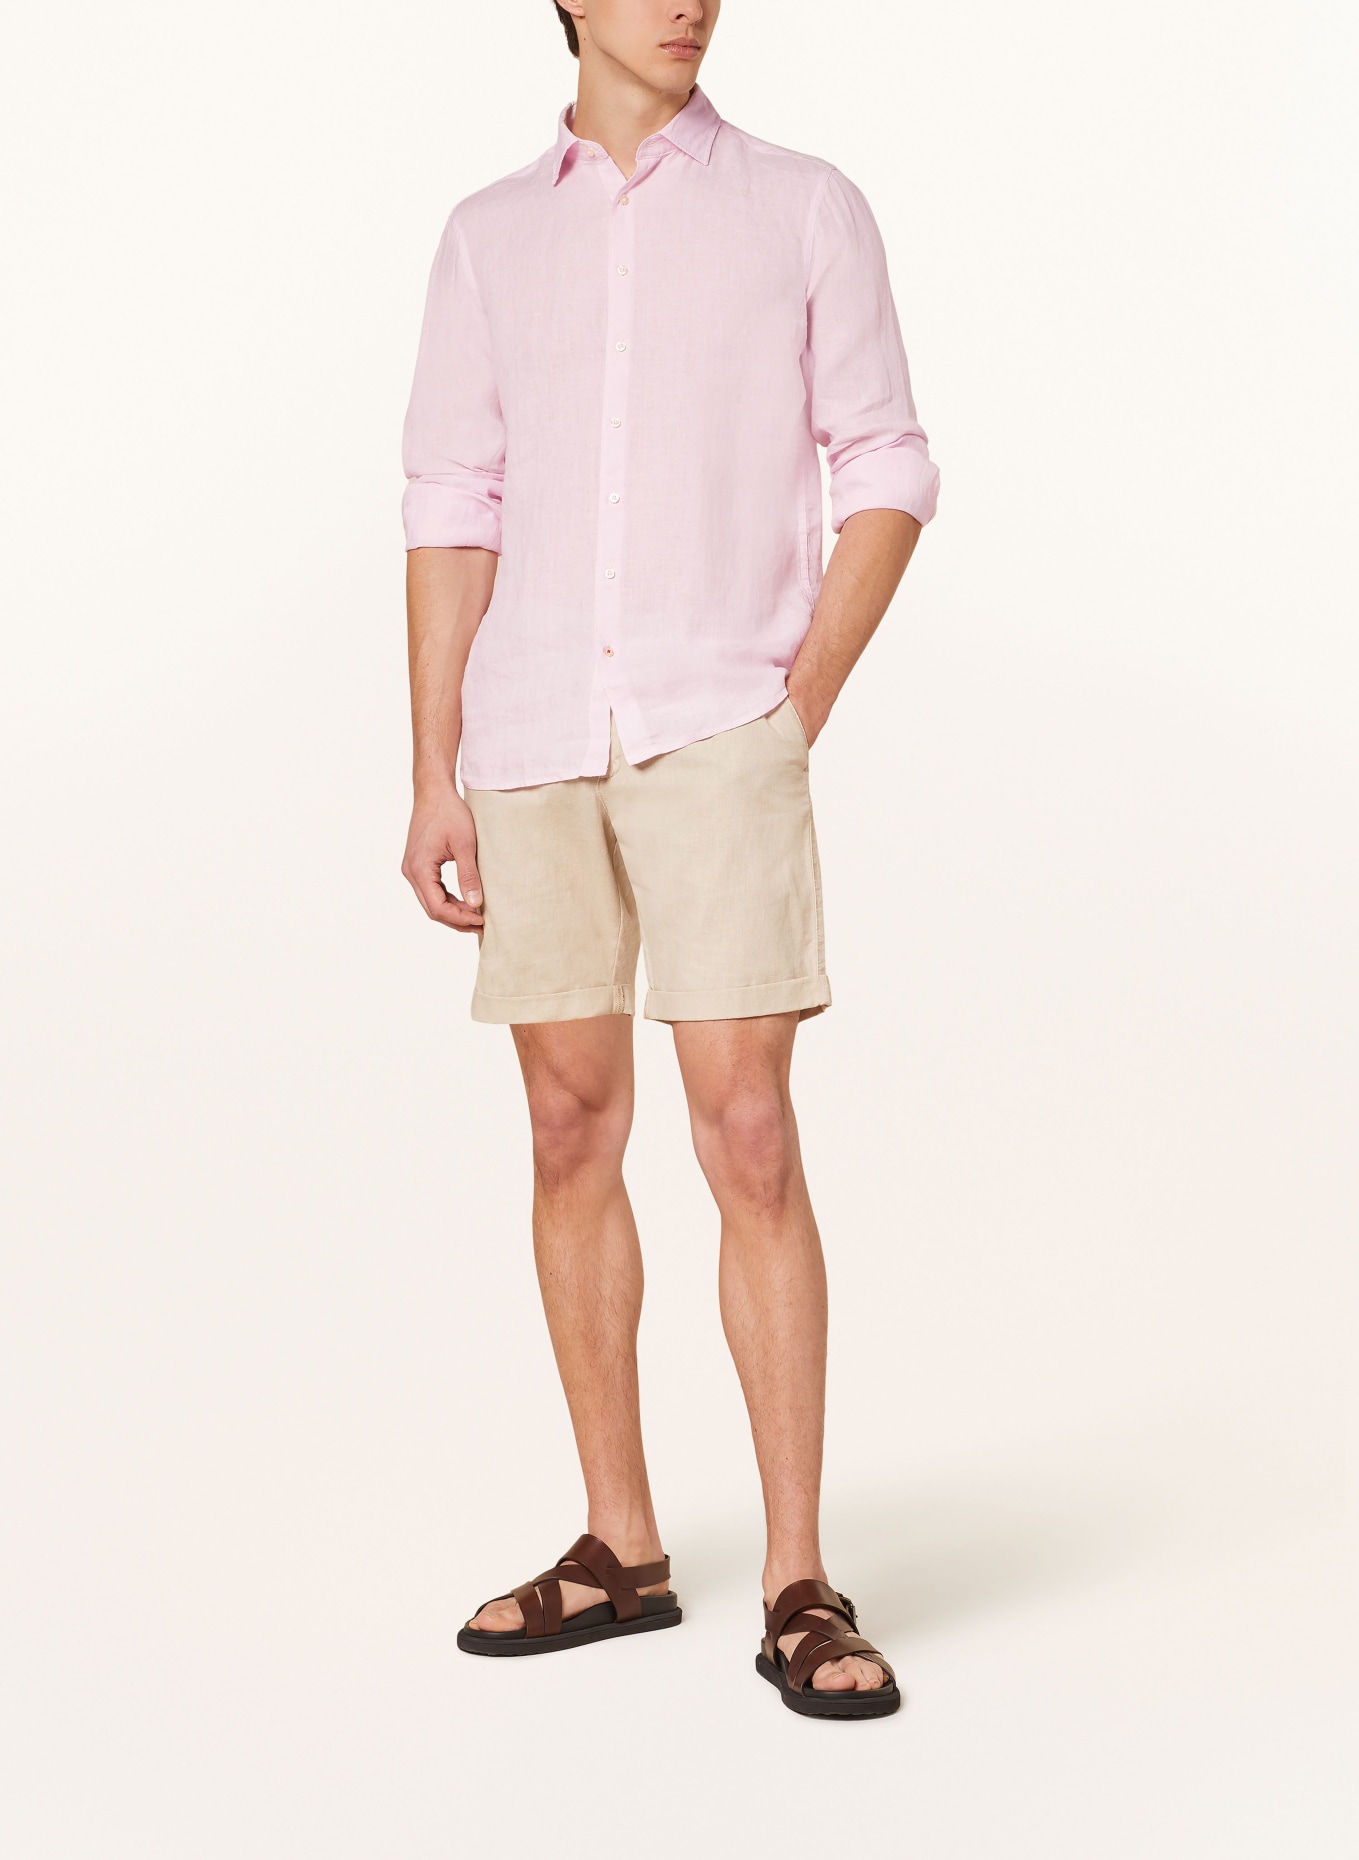 CINQUE Linen shirt CISTEVEN regular fit, Color: PINK (Image 2)